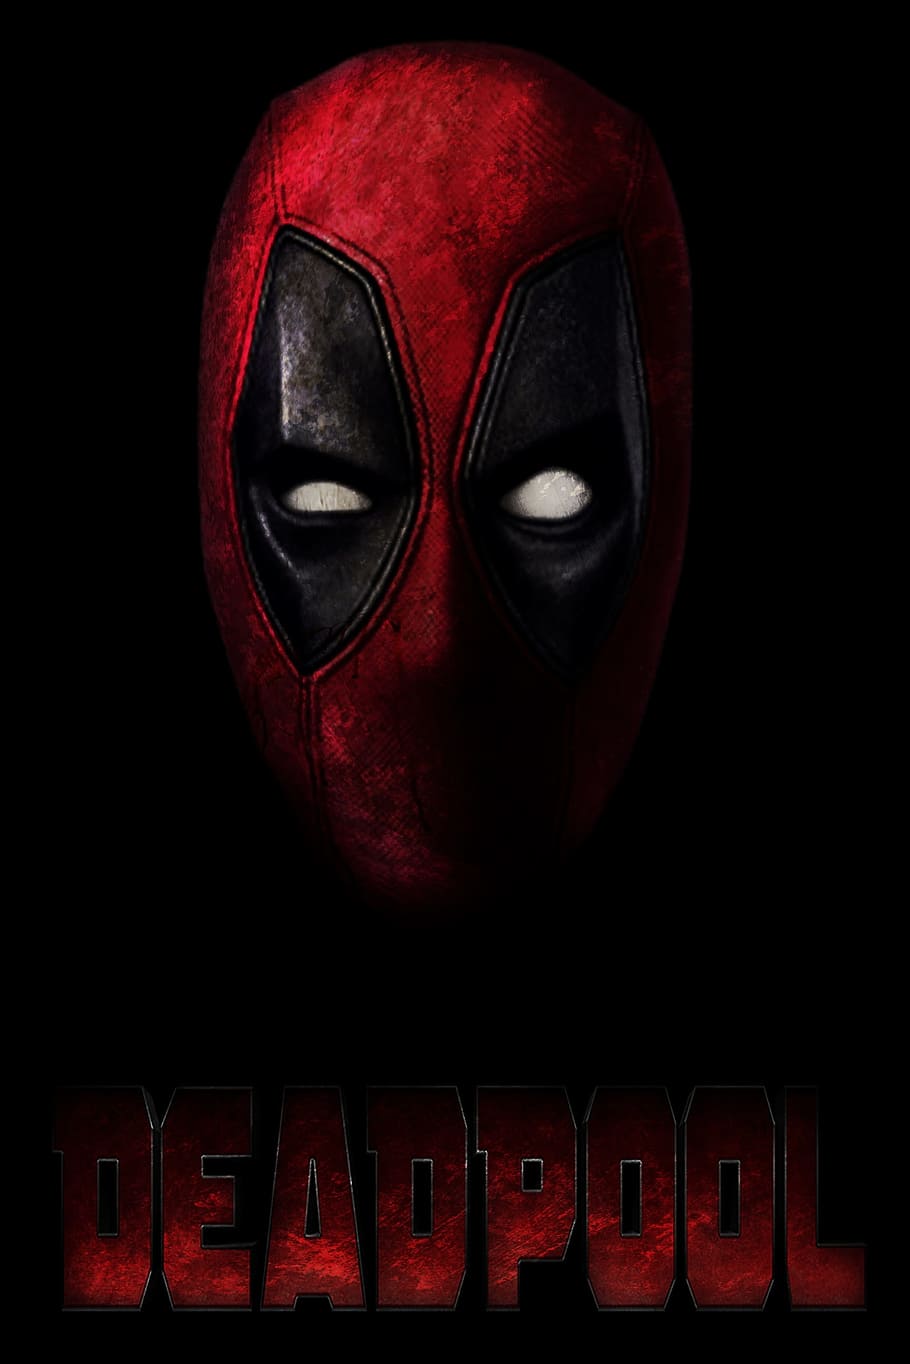 Deadpool digital wallpaper, marvel, action, movie, text, red